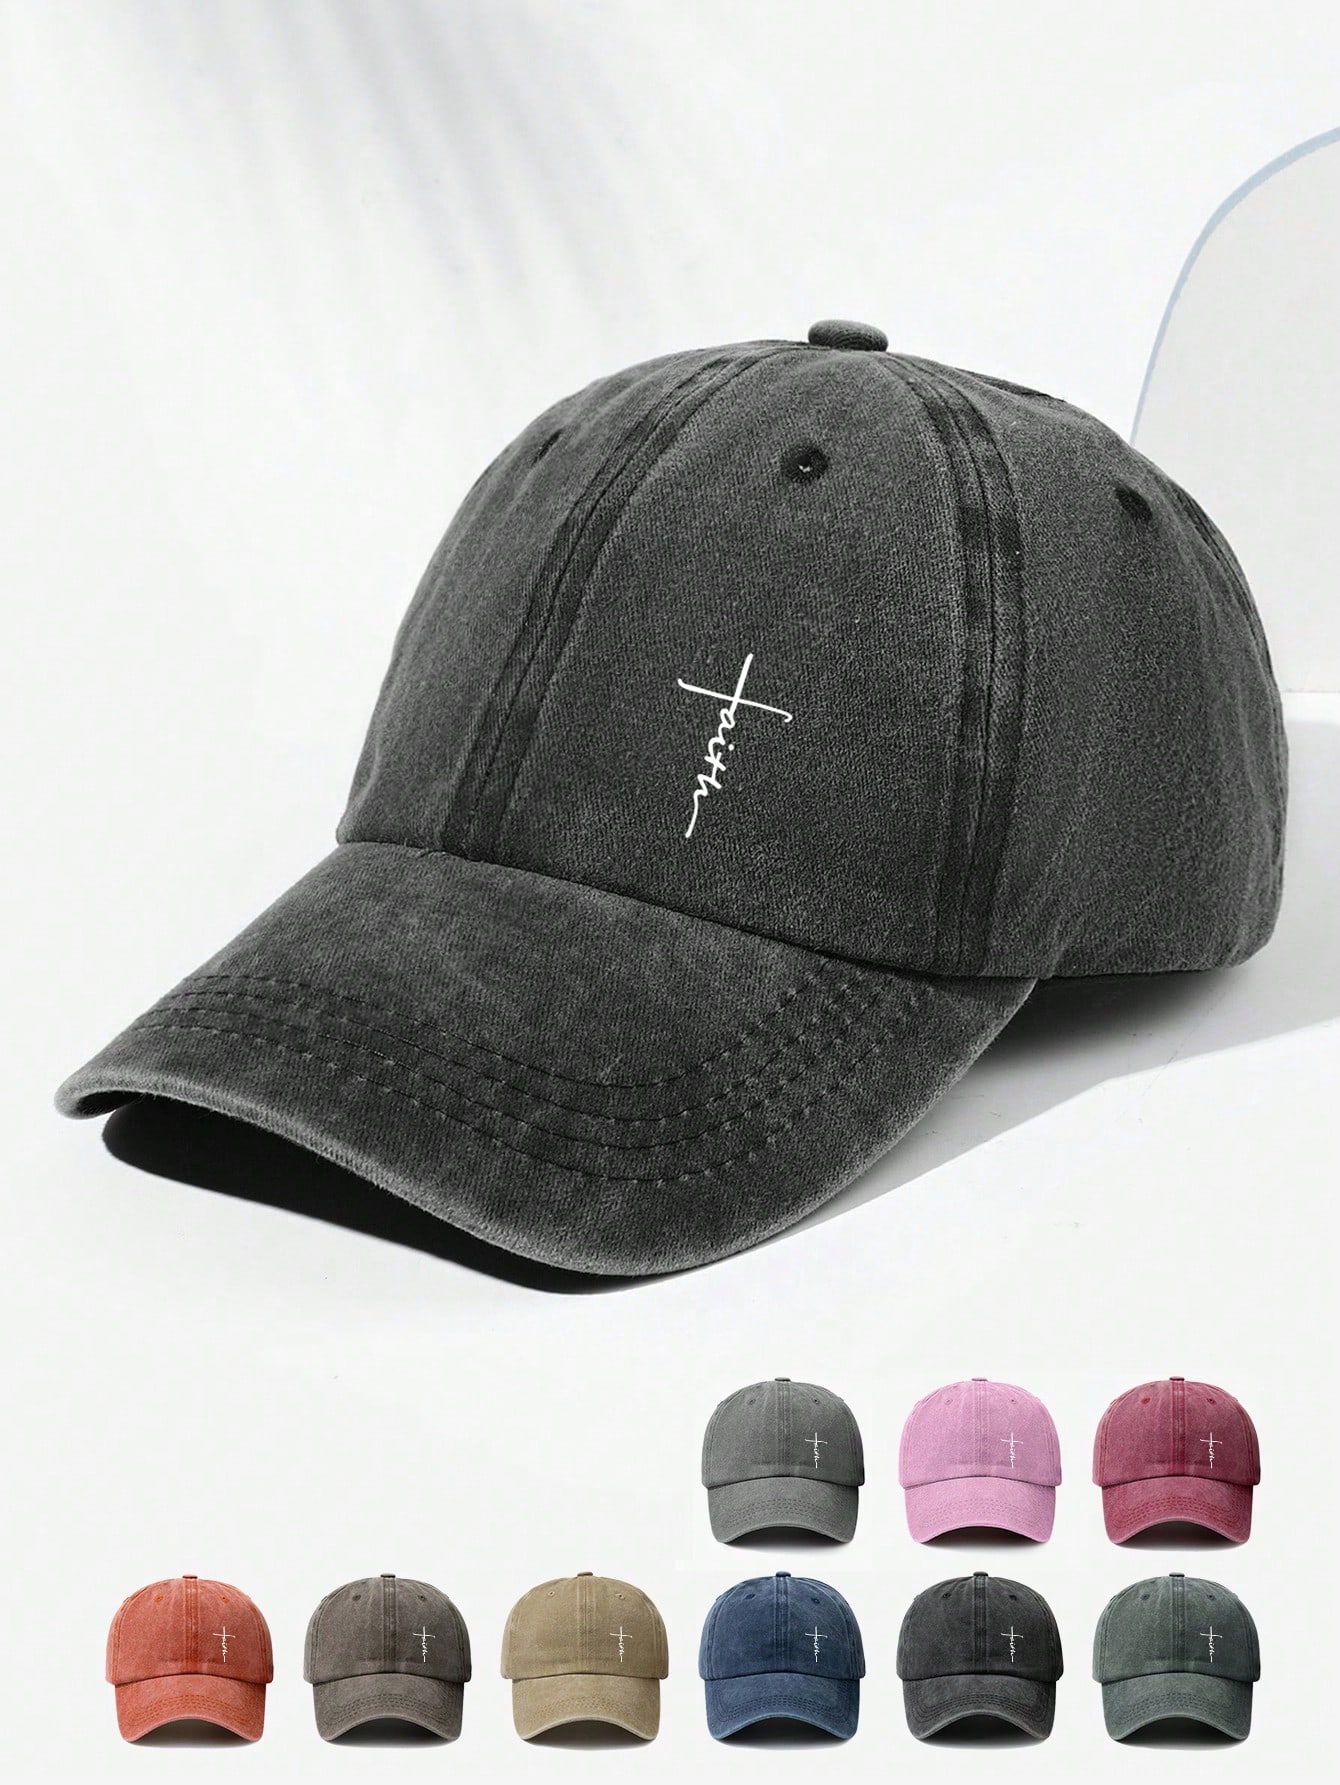 Винтажная бейсболка с принтом крестов унисекс модная шляпа для папы с регулируемой пряжкой для уличной и повседневной носки